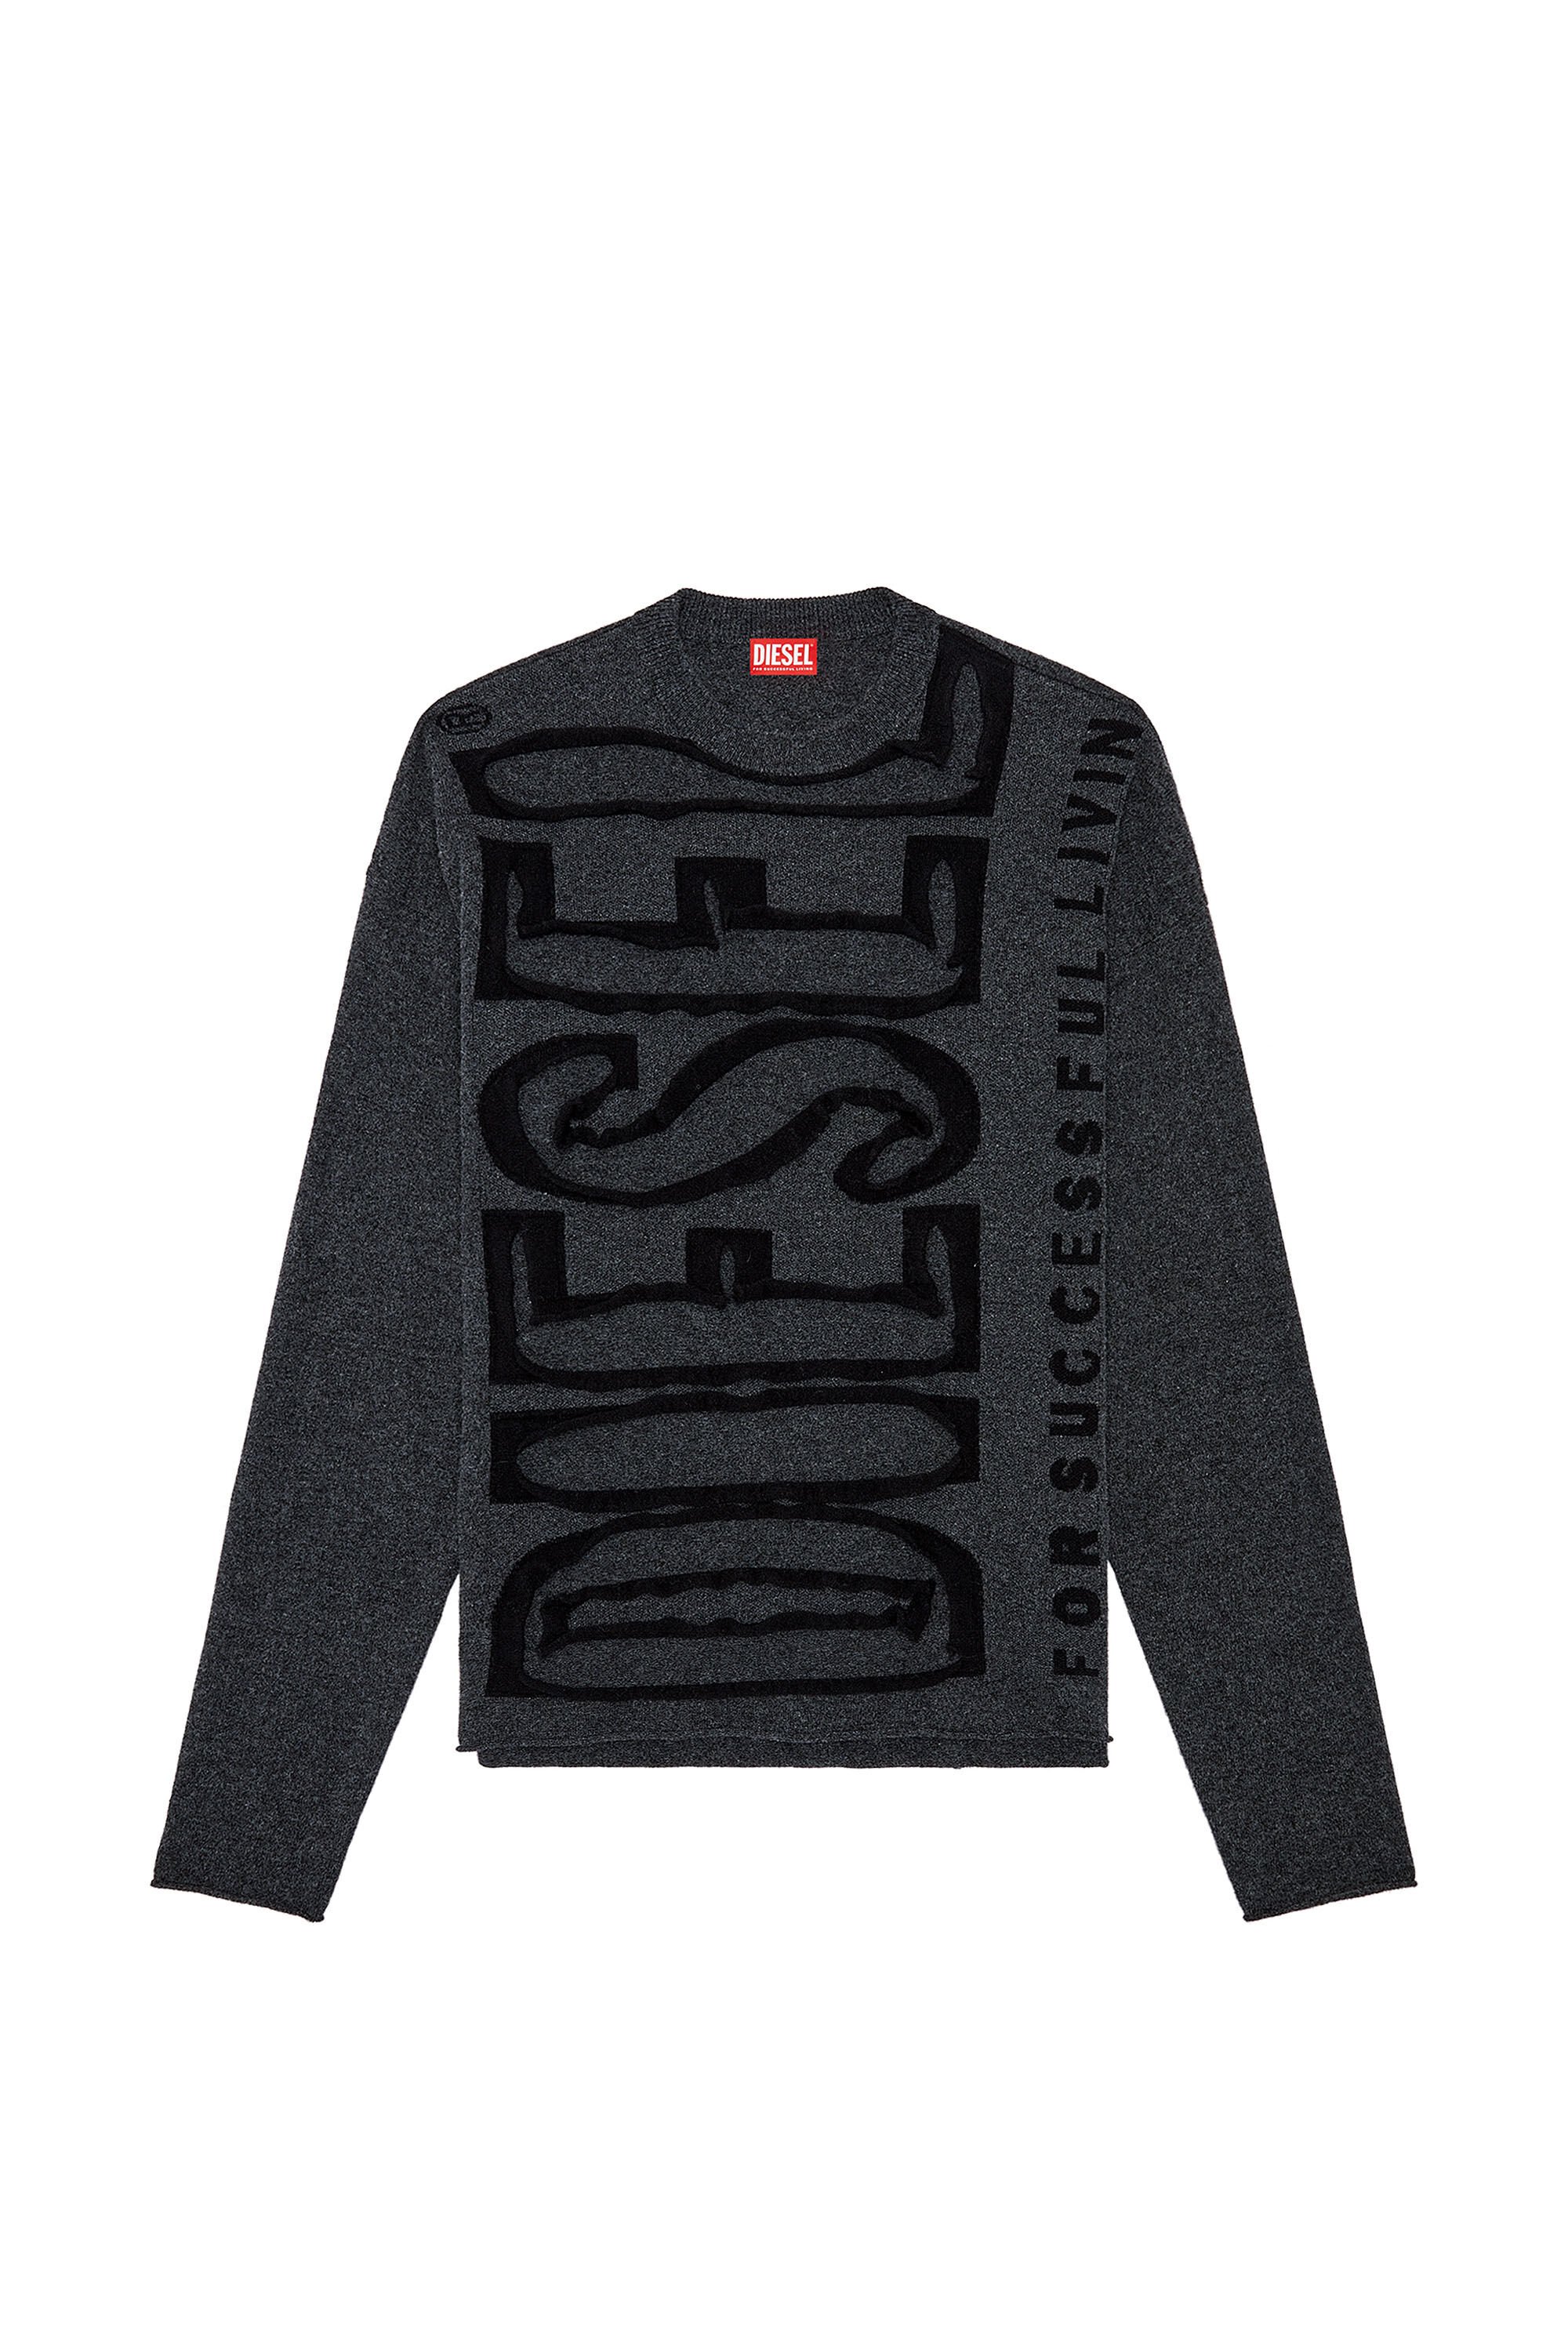 Diesel logo-embroidered sleeve wool cardigan - Black